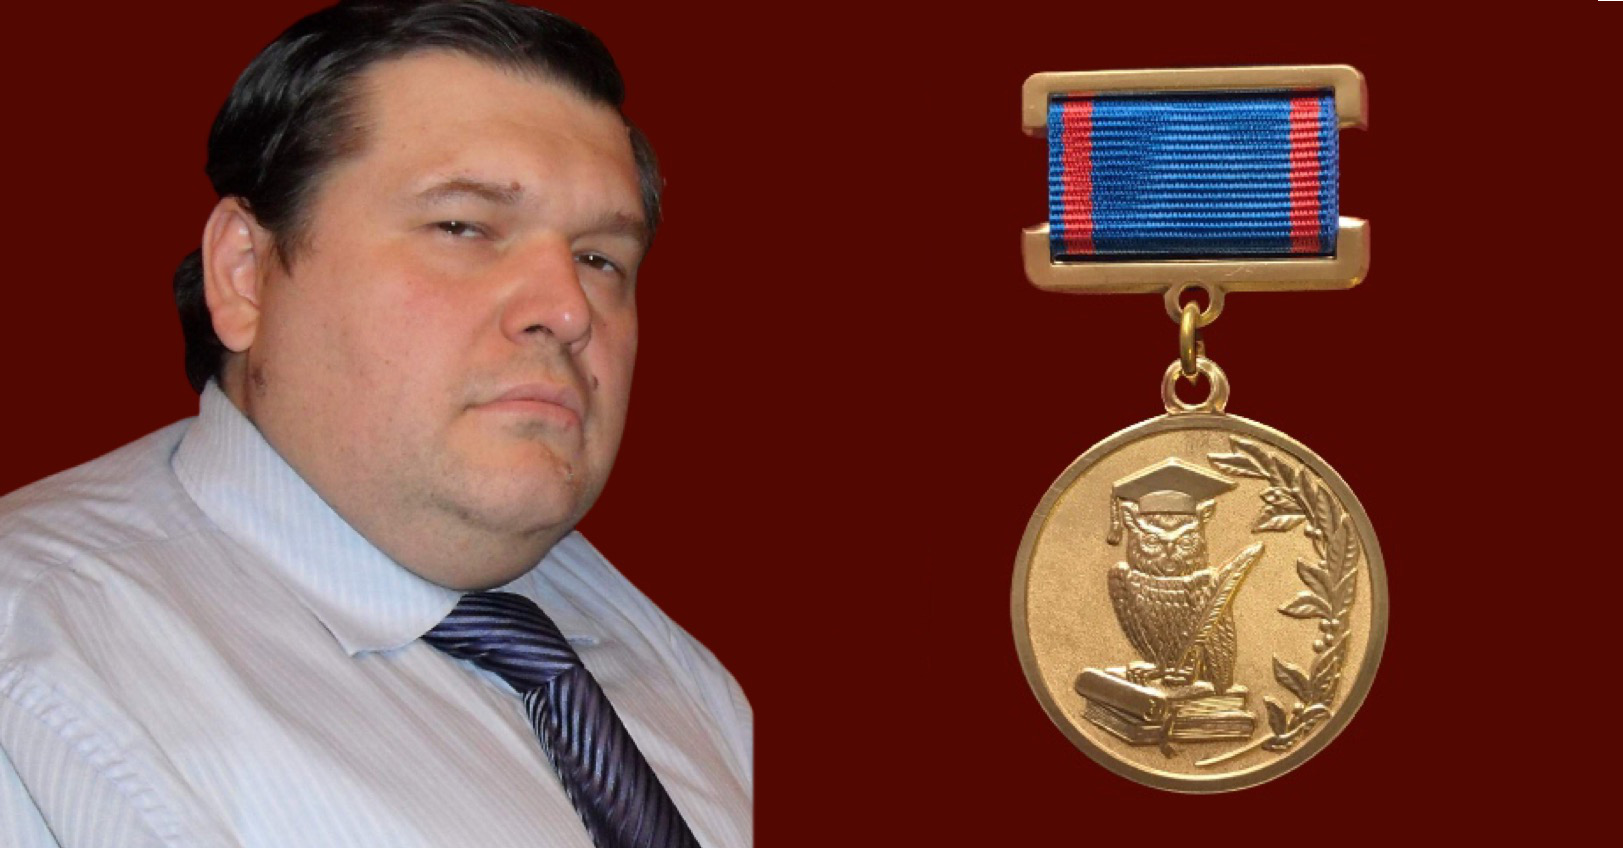 Д.Н. Ермаков награжден медалью "За вклад в реализацию государственной политики в области образования и научно-технологического развития"